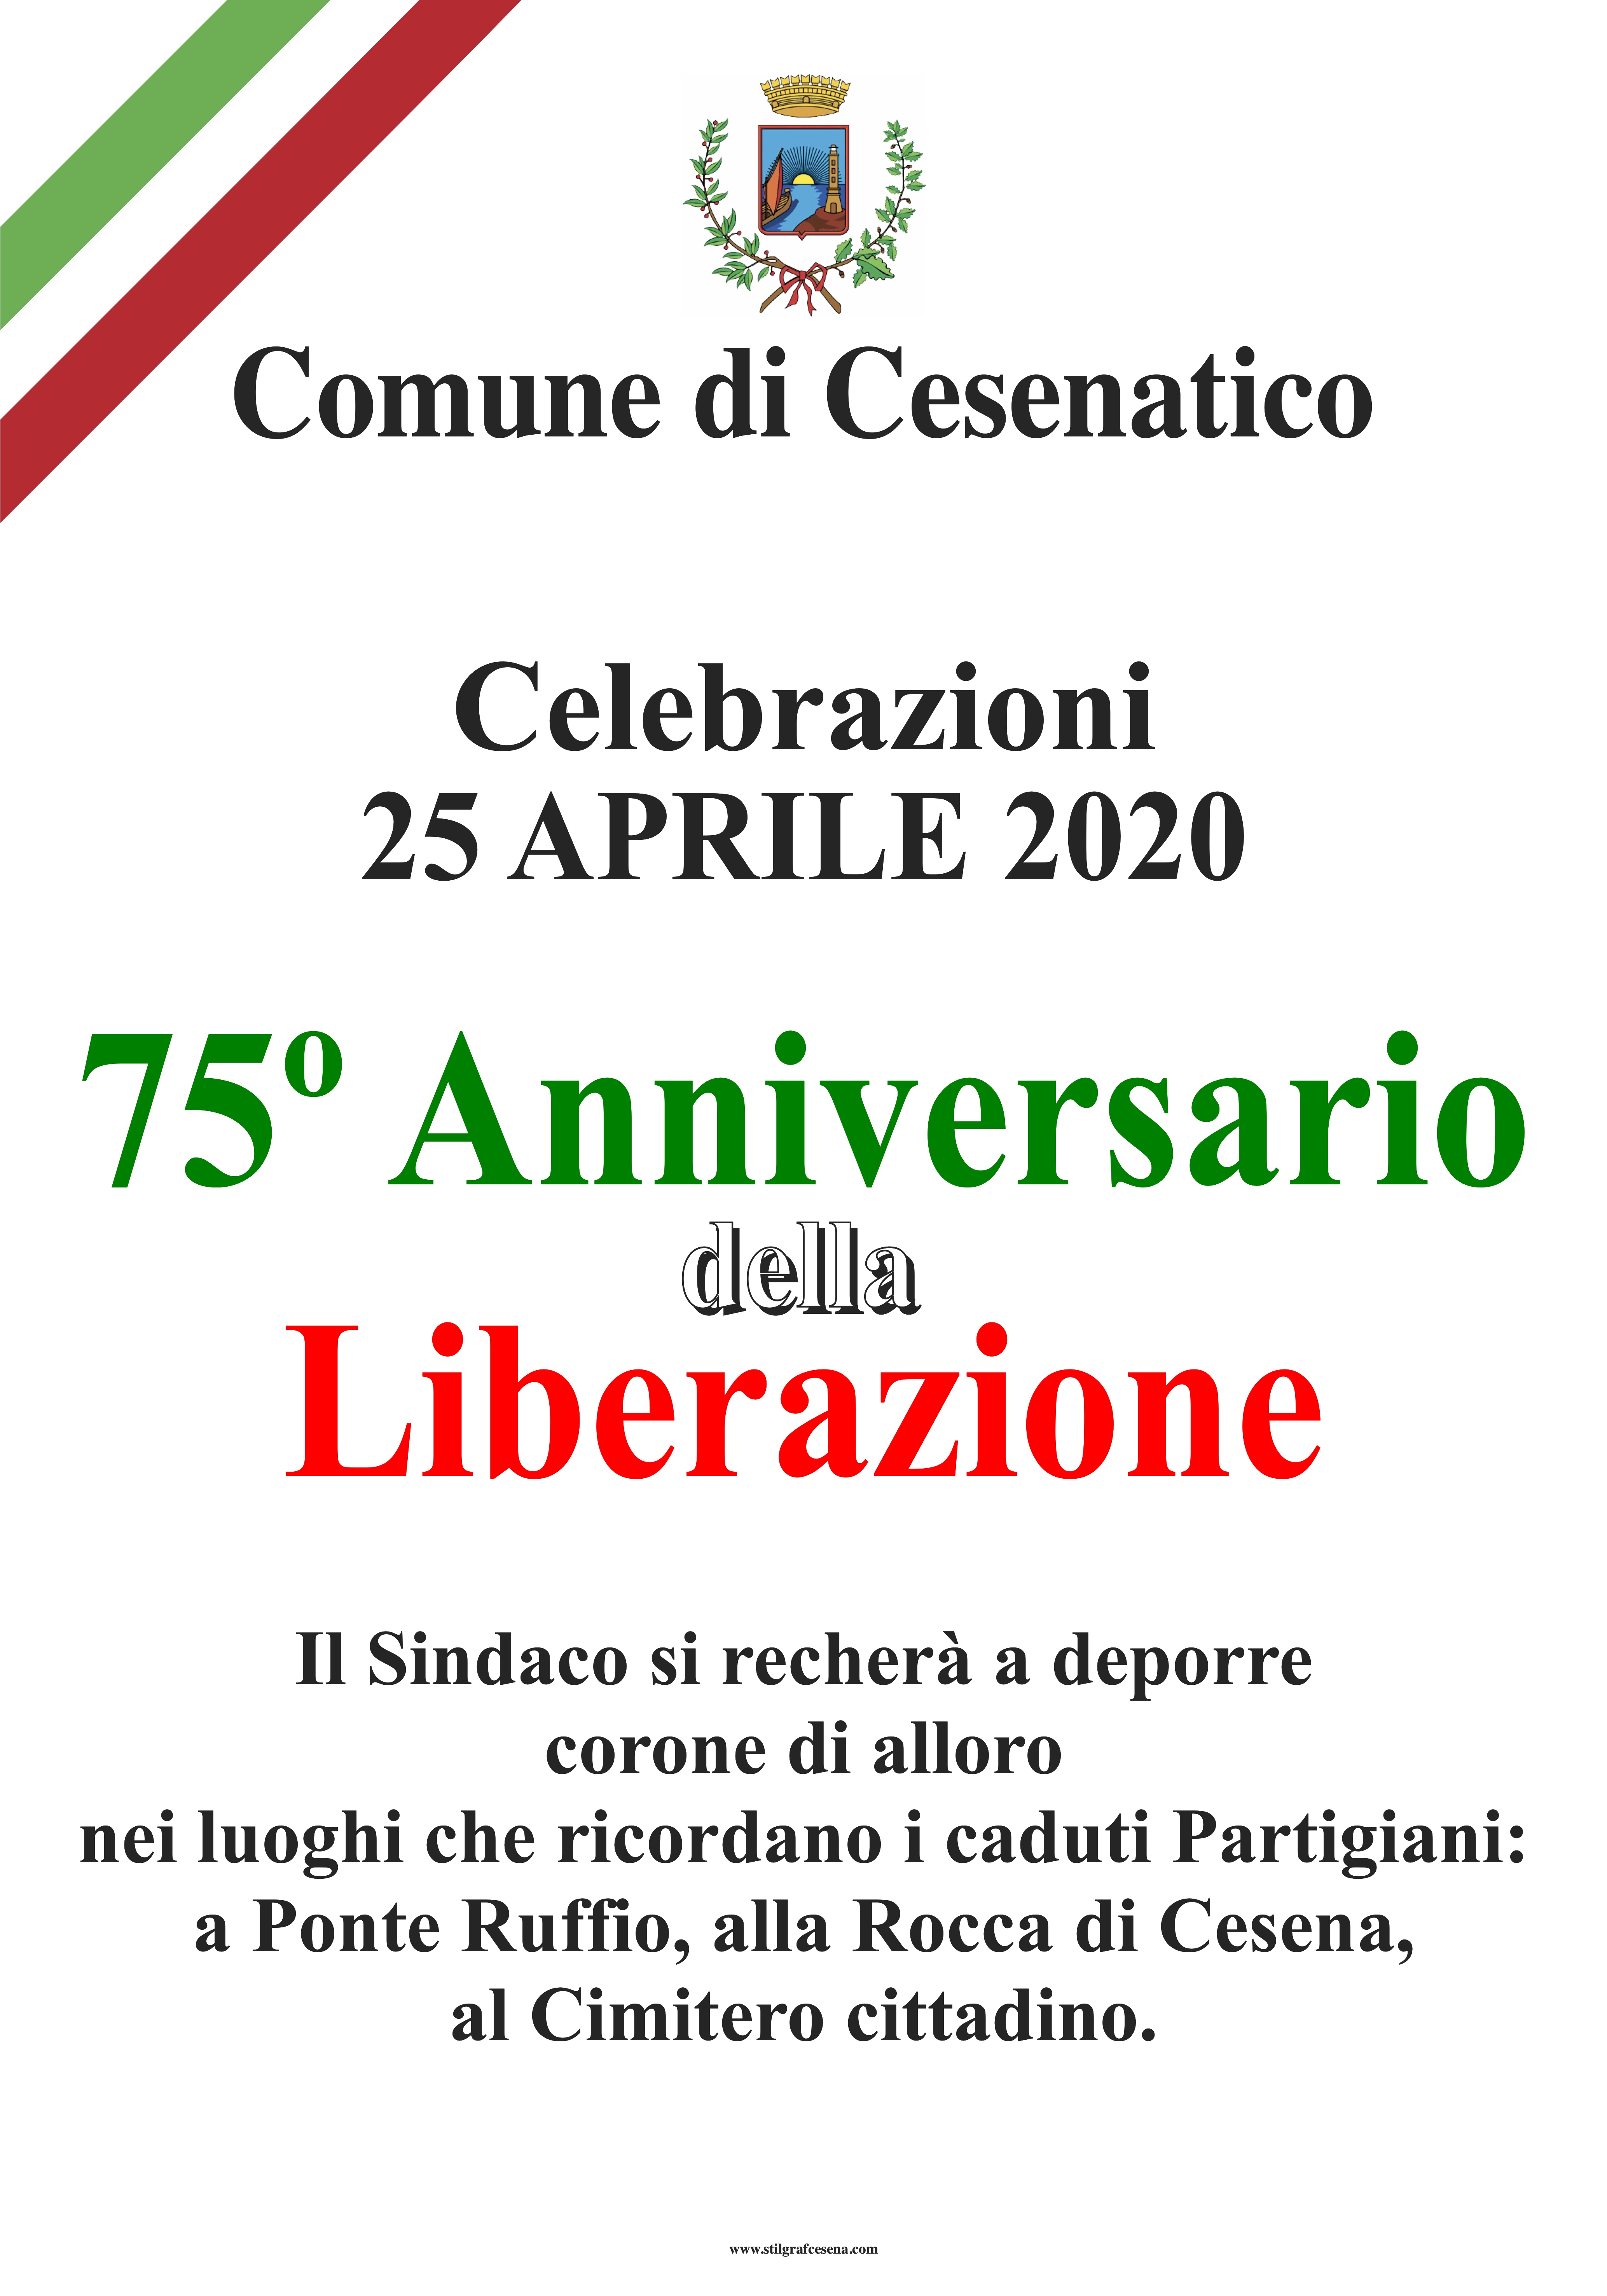 25 aprile 2020: 75° anniversario della Liberazione dal regime nazifascista